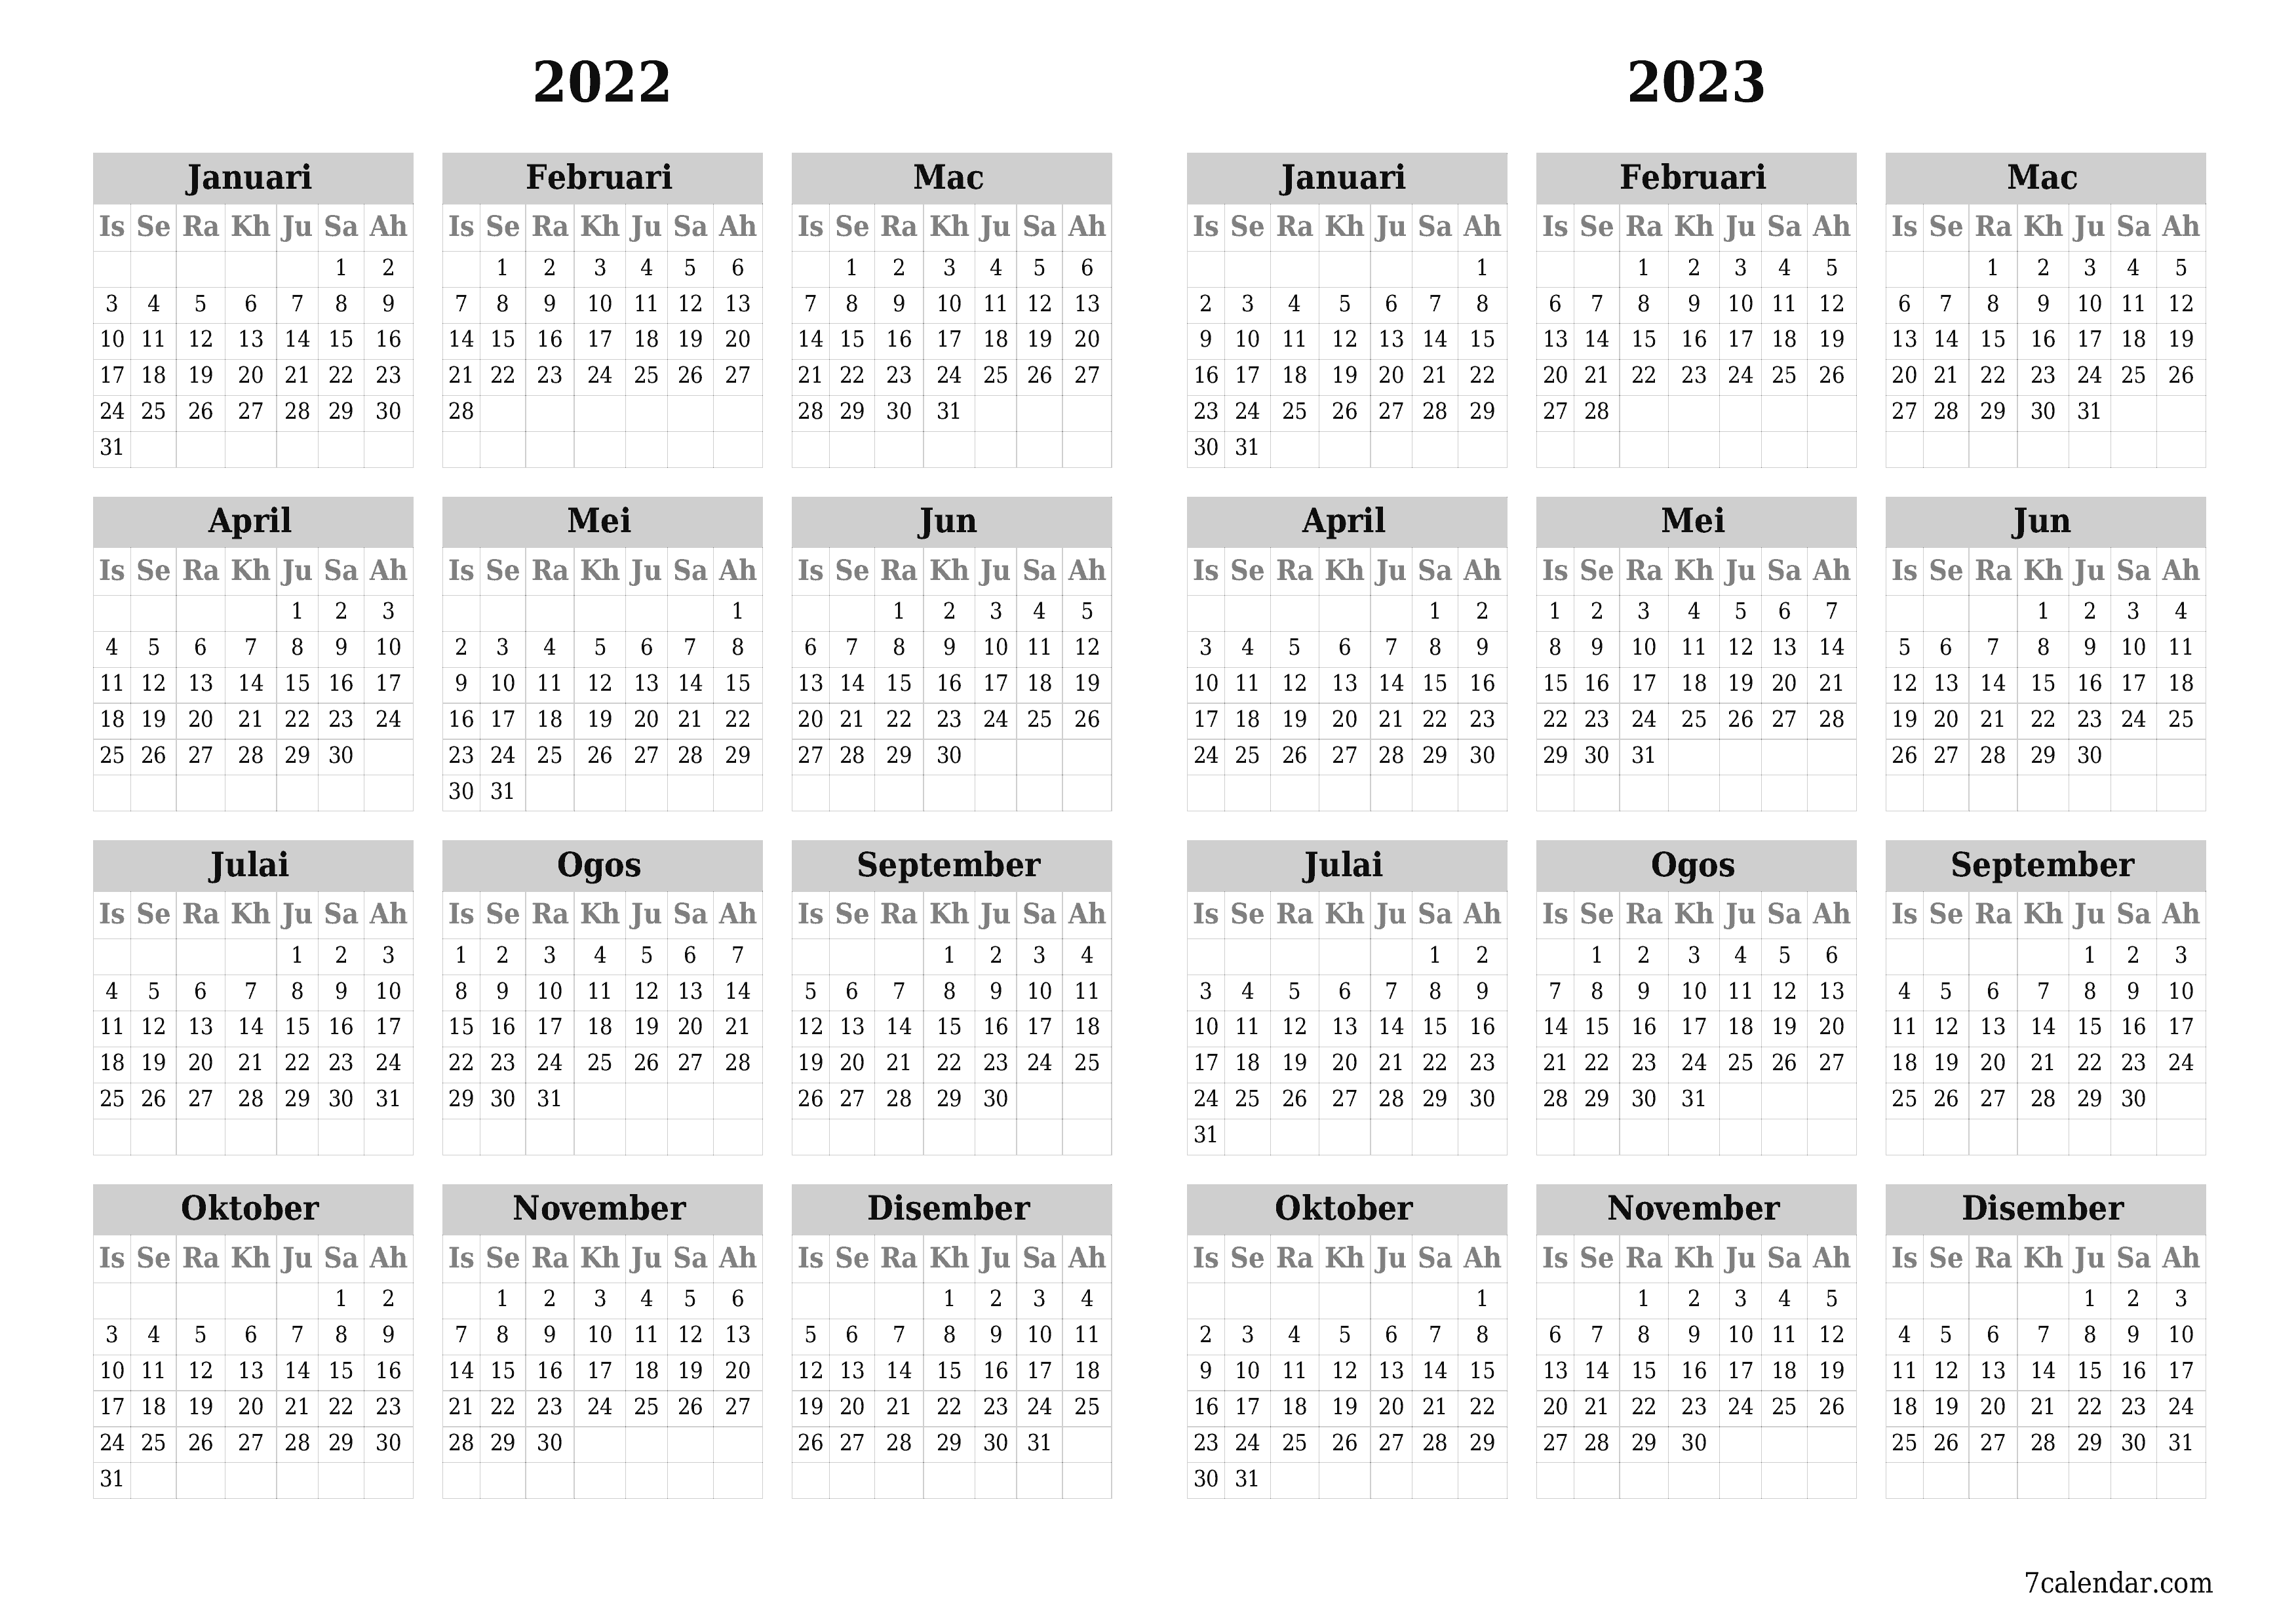  boleh cetak dinding templat percumamendatar Tahunan kalendar Ogos (Ogo) 2022